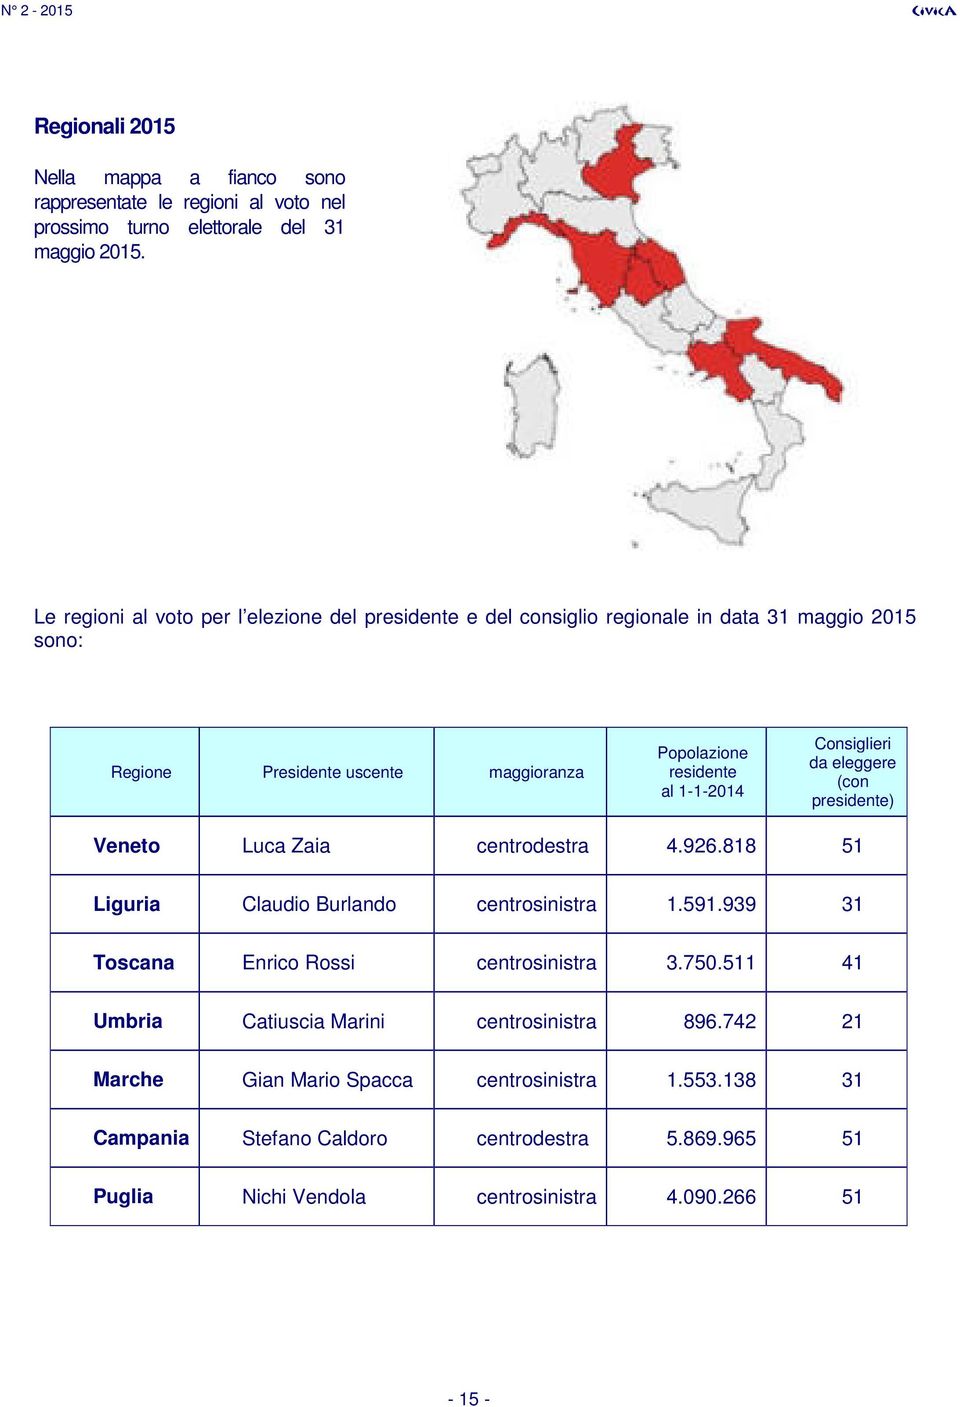 1-1-2014 Consiglieri da eleggere (con presidente) Veneto Luca Zaia centrodestra 4.926.818 51 Liguria Claudio Burlando centrosinistra 1.591.